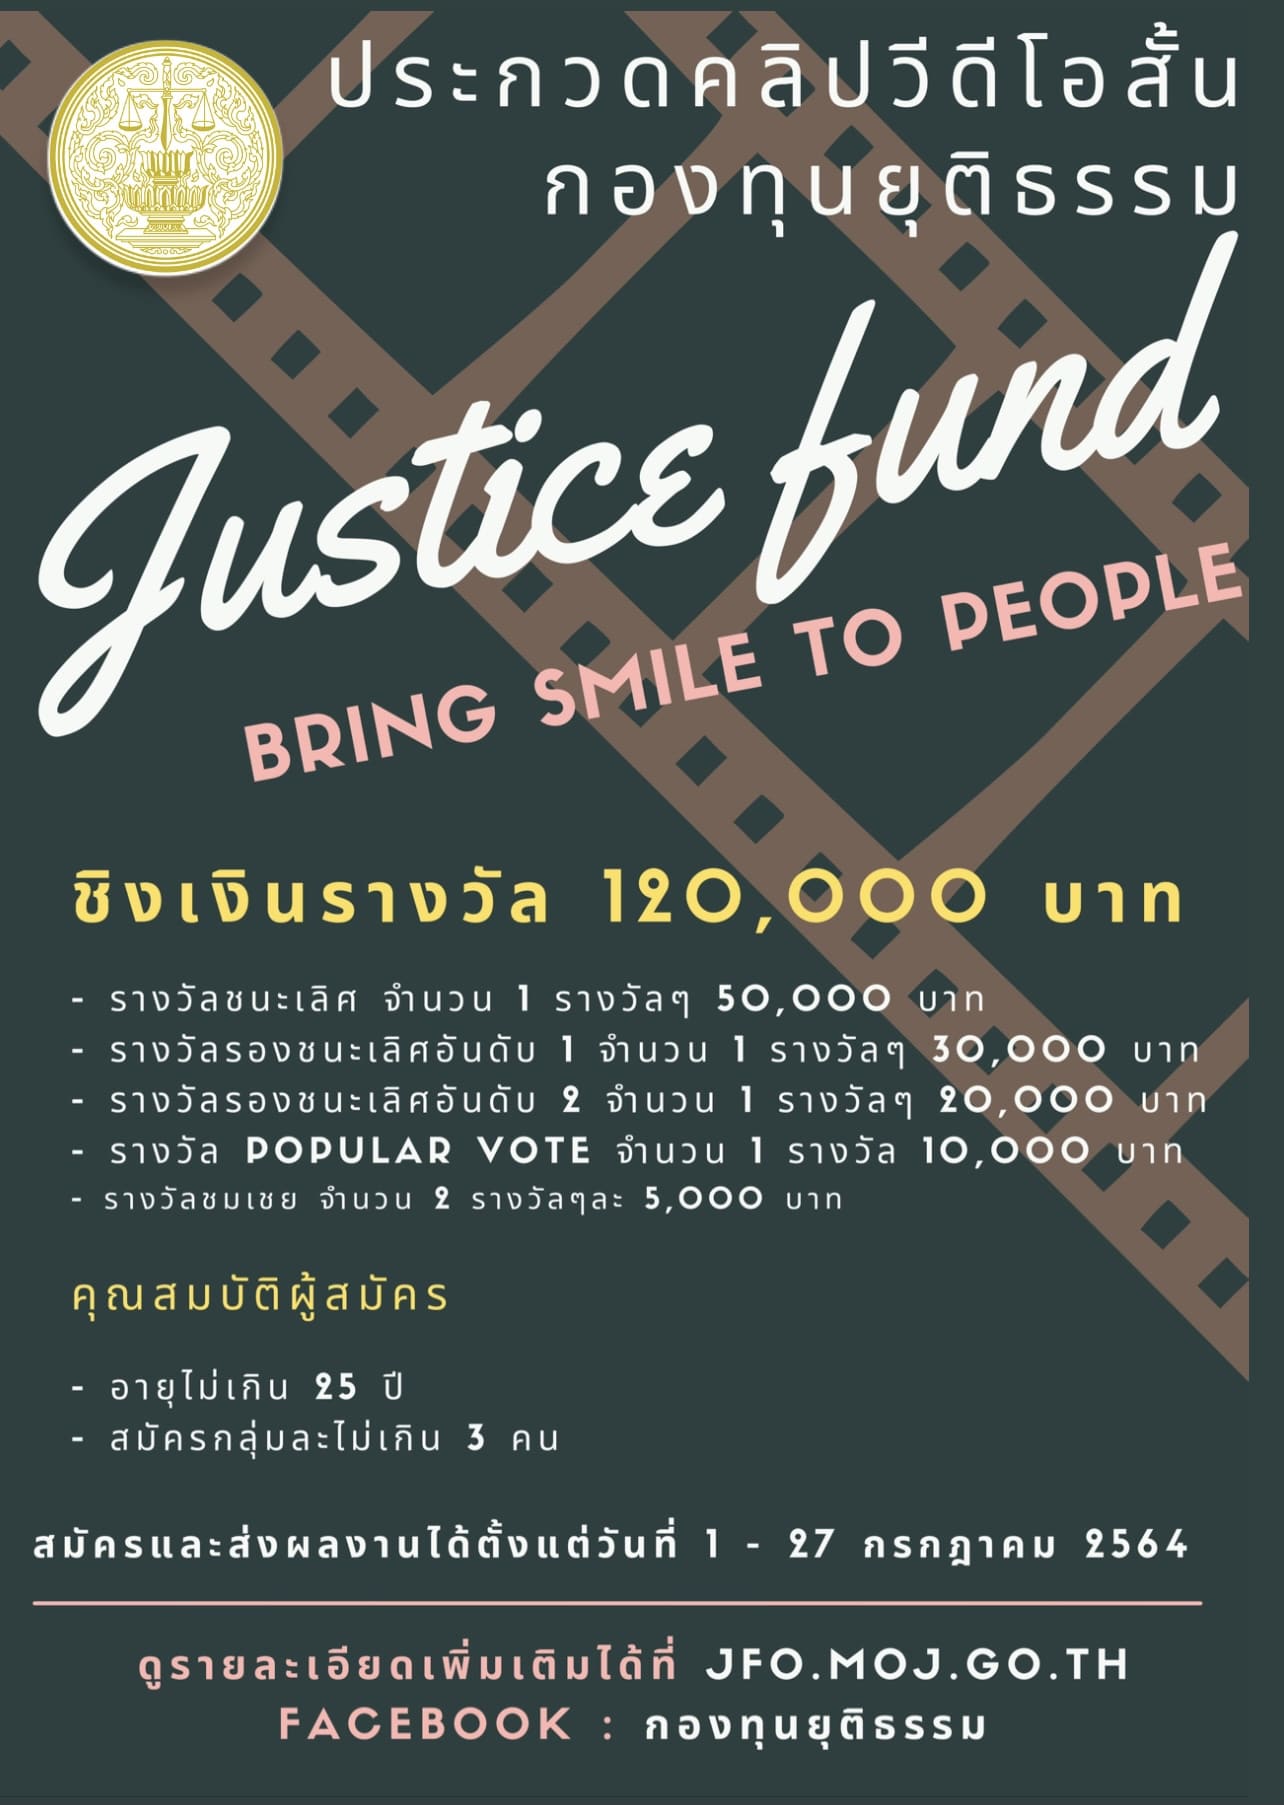 ประกวดคลิปวิดีโอสั้น “กองทุนยุติธรรมพึ่งได้ประชาชนยิ้มออก : Justice Fund, Bring Smile to People” เปิดรับสมัคร 1- 27 กรกฏาคม 2564